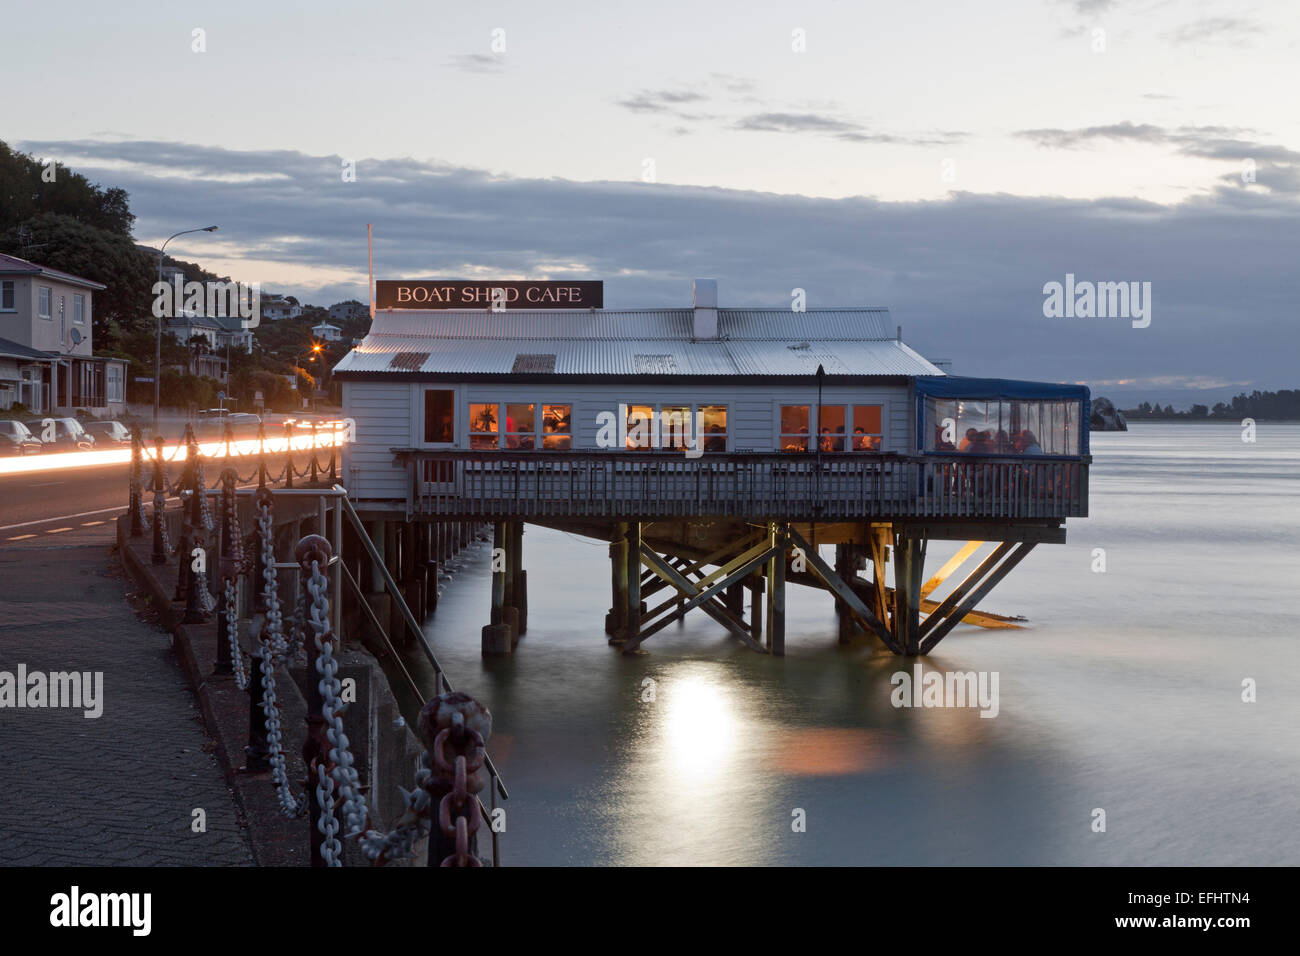 Restaurant sur pilotis au bord de l'eau dans le port, Bateau Shed Cafe, Nelson, île du Sud, Nouvelle-Zélande Banque D'Images